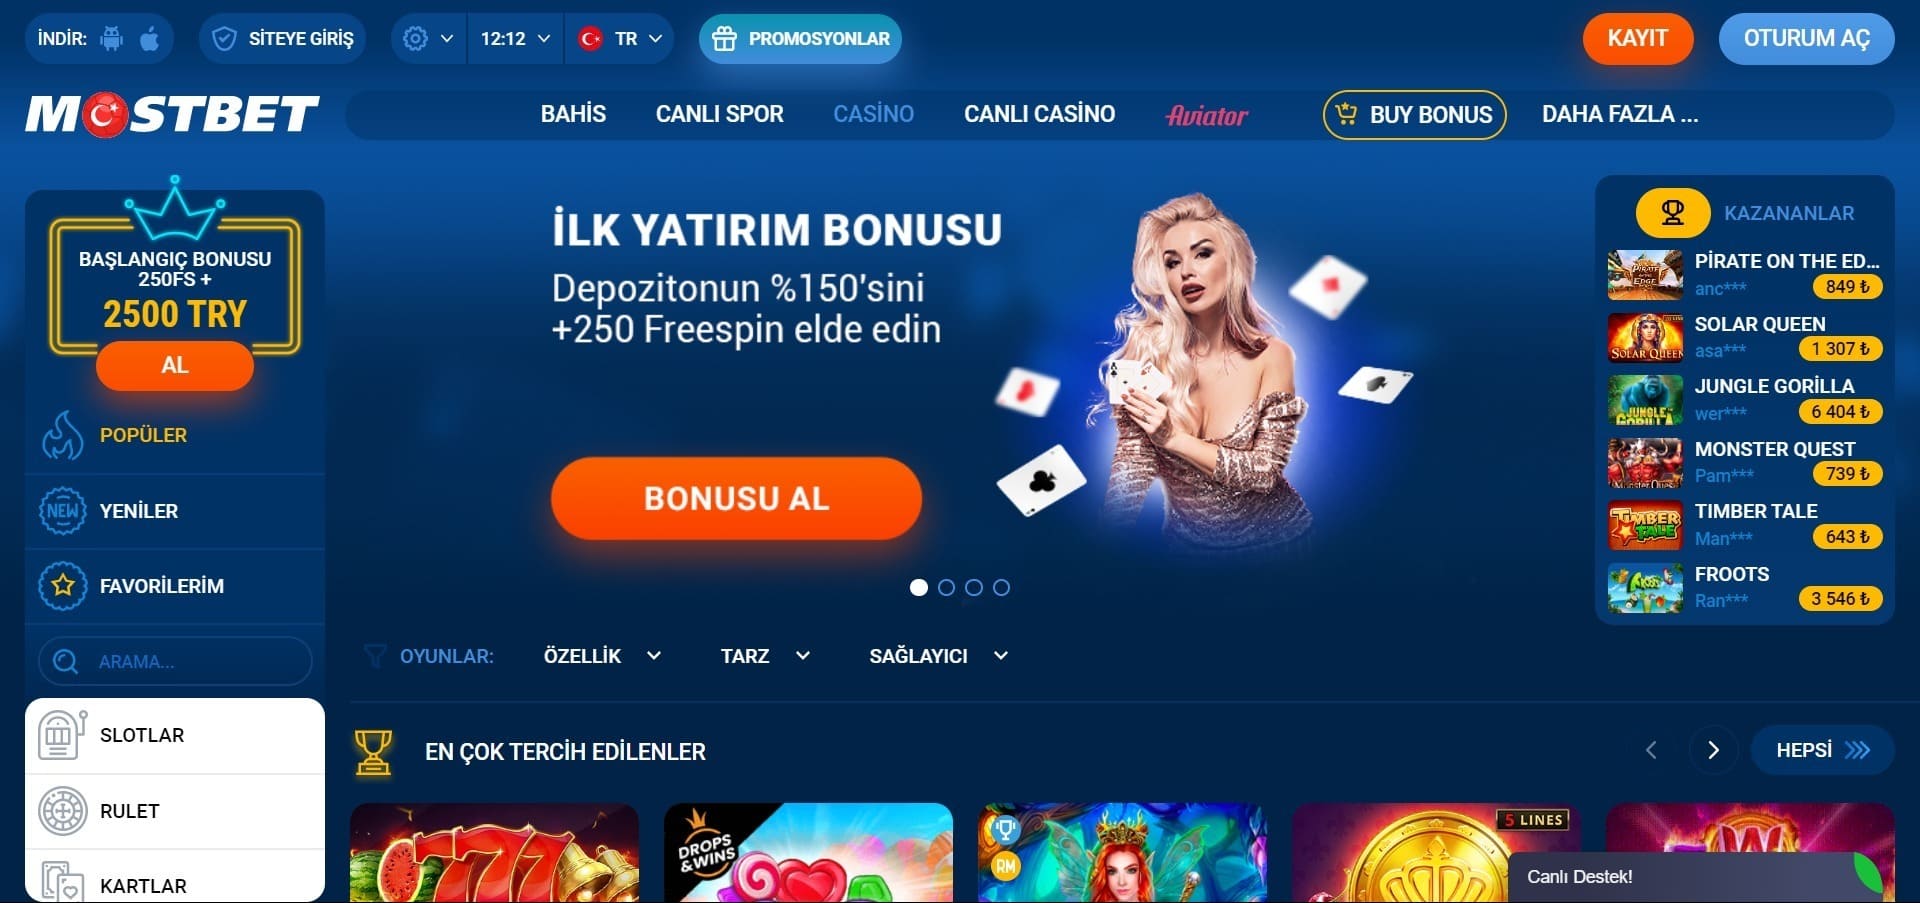 Mostbet Giriş Sertifikalı Web Sayfaları mostbet turk Casino Hindistan Online kumarını takdir ediyor